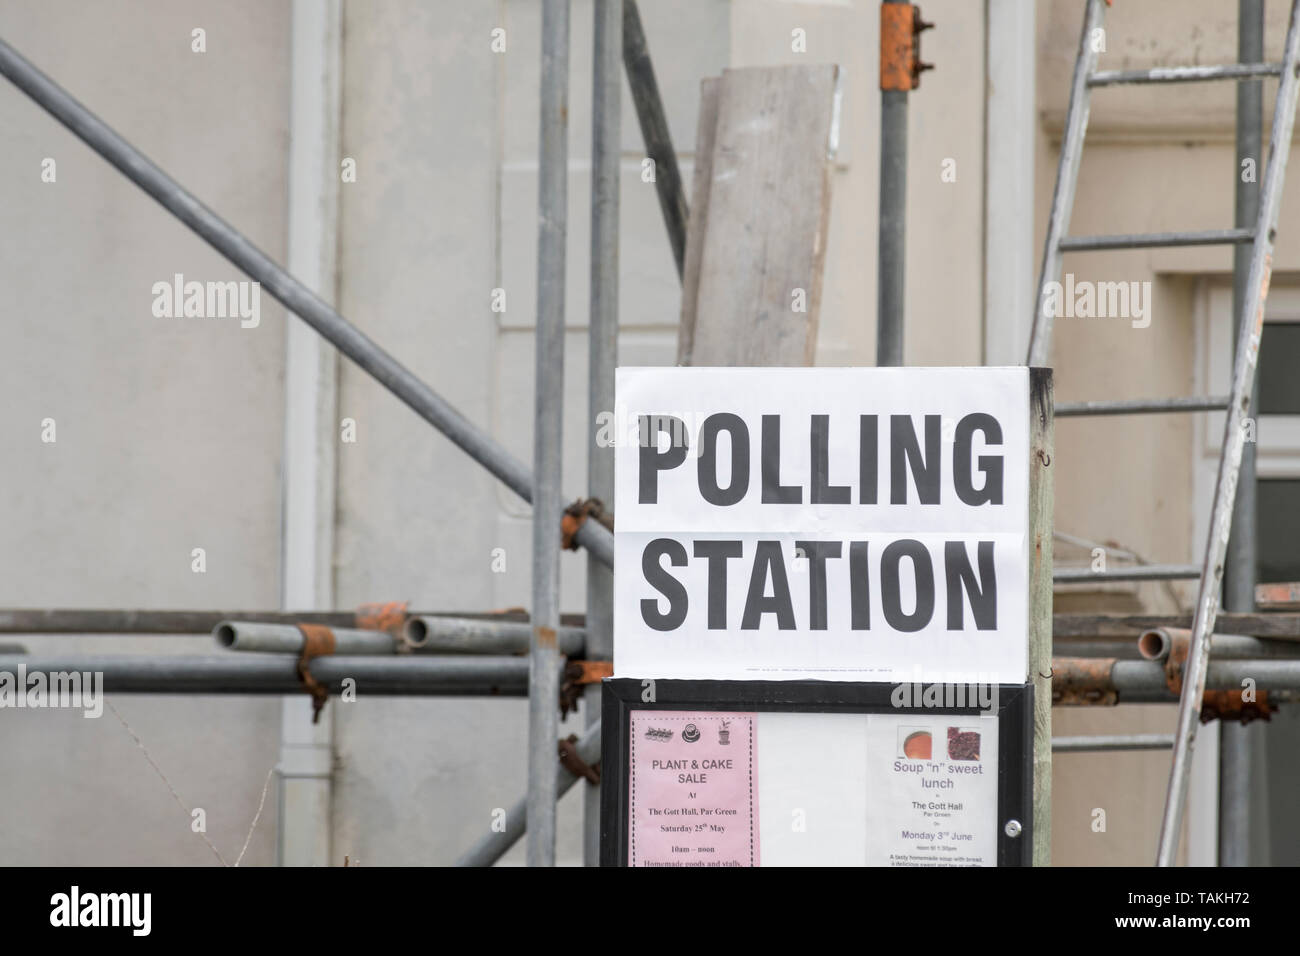 Wahllokal Zeichen außerhalb der britischen Wahlen Wahllokale - für 2019 Wahlen zum Europäischen Parlament, aber auch für andere britische Wahlen. Britische allgemeine Wahlen. Stockfoto